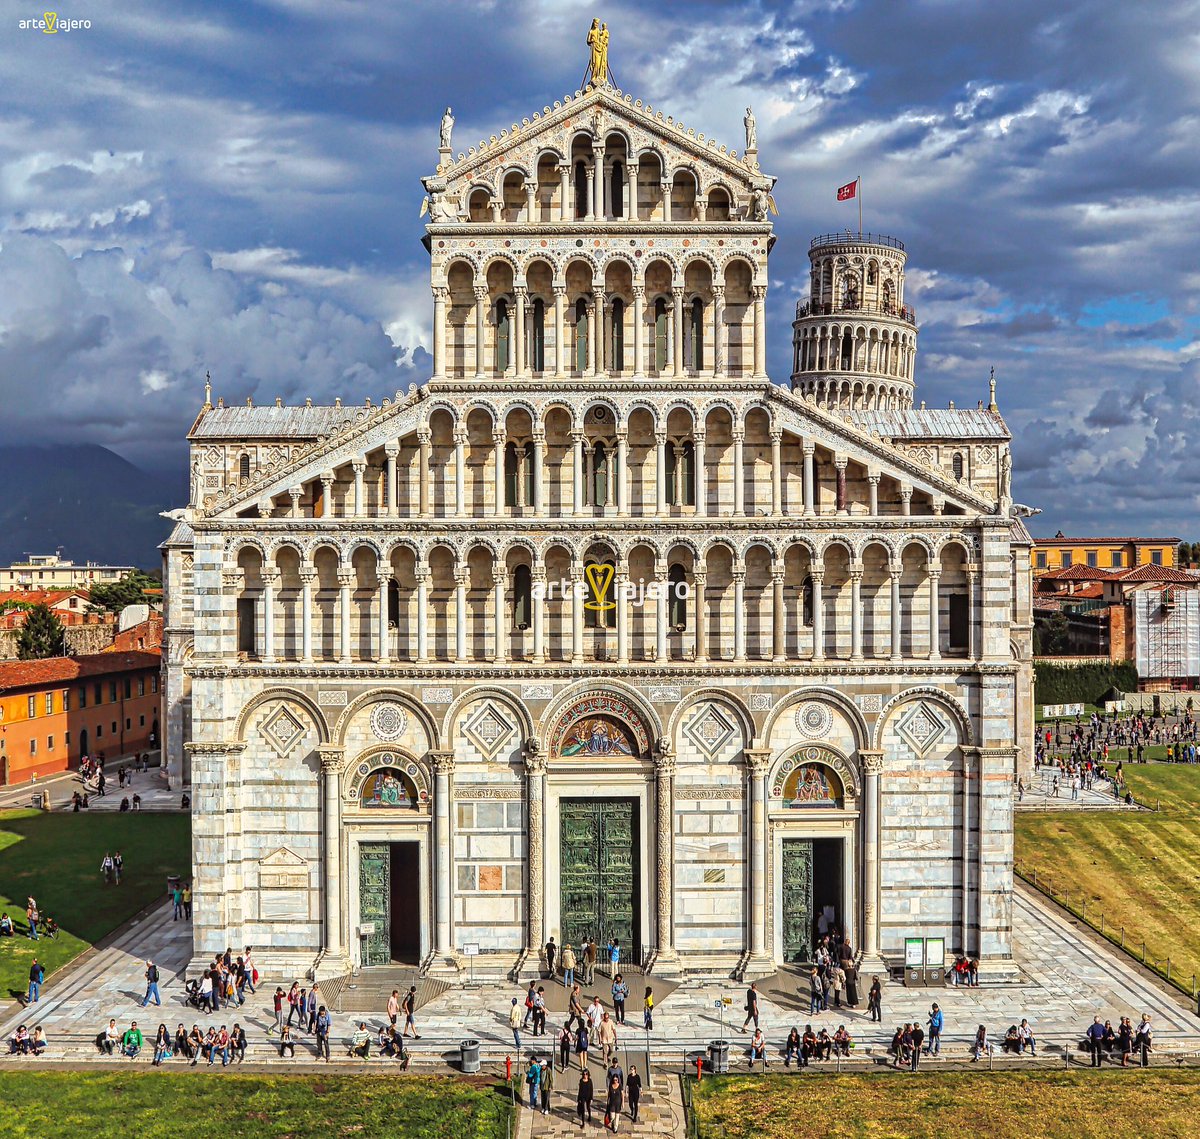 Duomo de Pisa, auténtica obra maestra de la arquitectura románica en Italia ❤️ #FelizDomingo #photograghy #travel